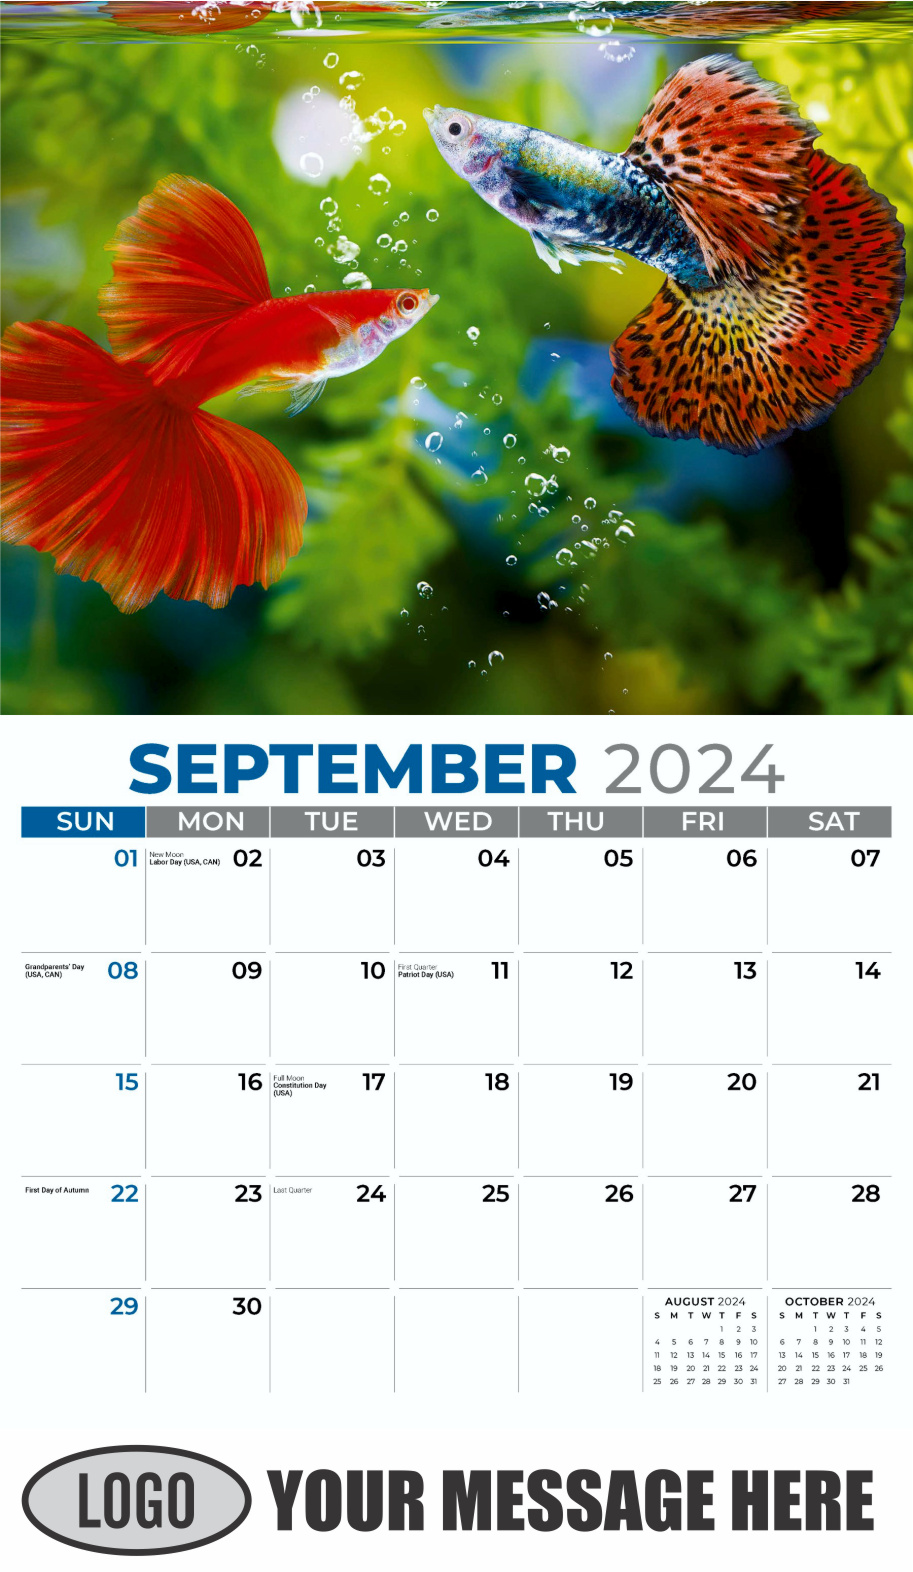 Pets 2024 Business Advertising Wall Calendar - September